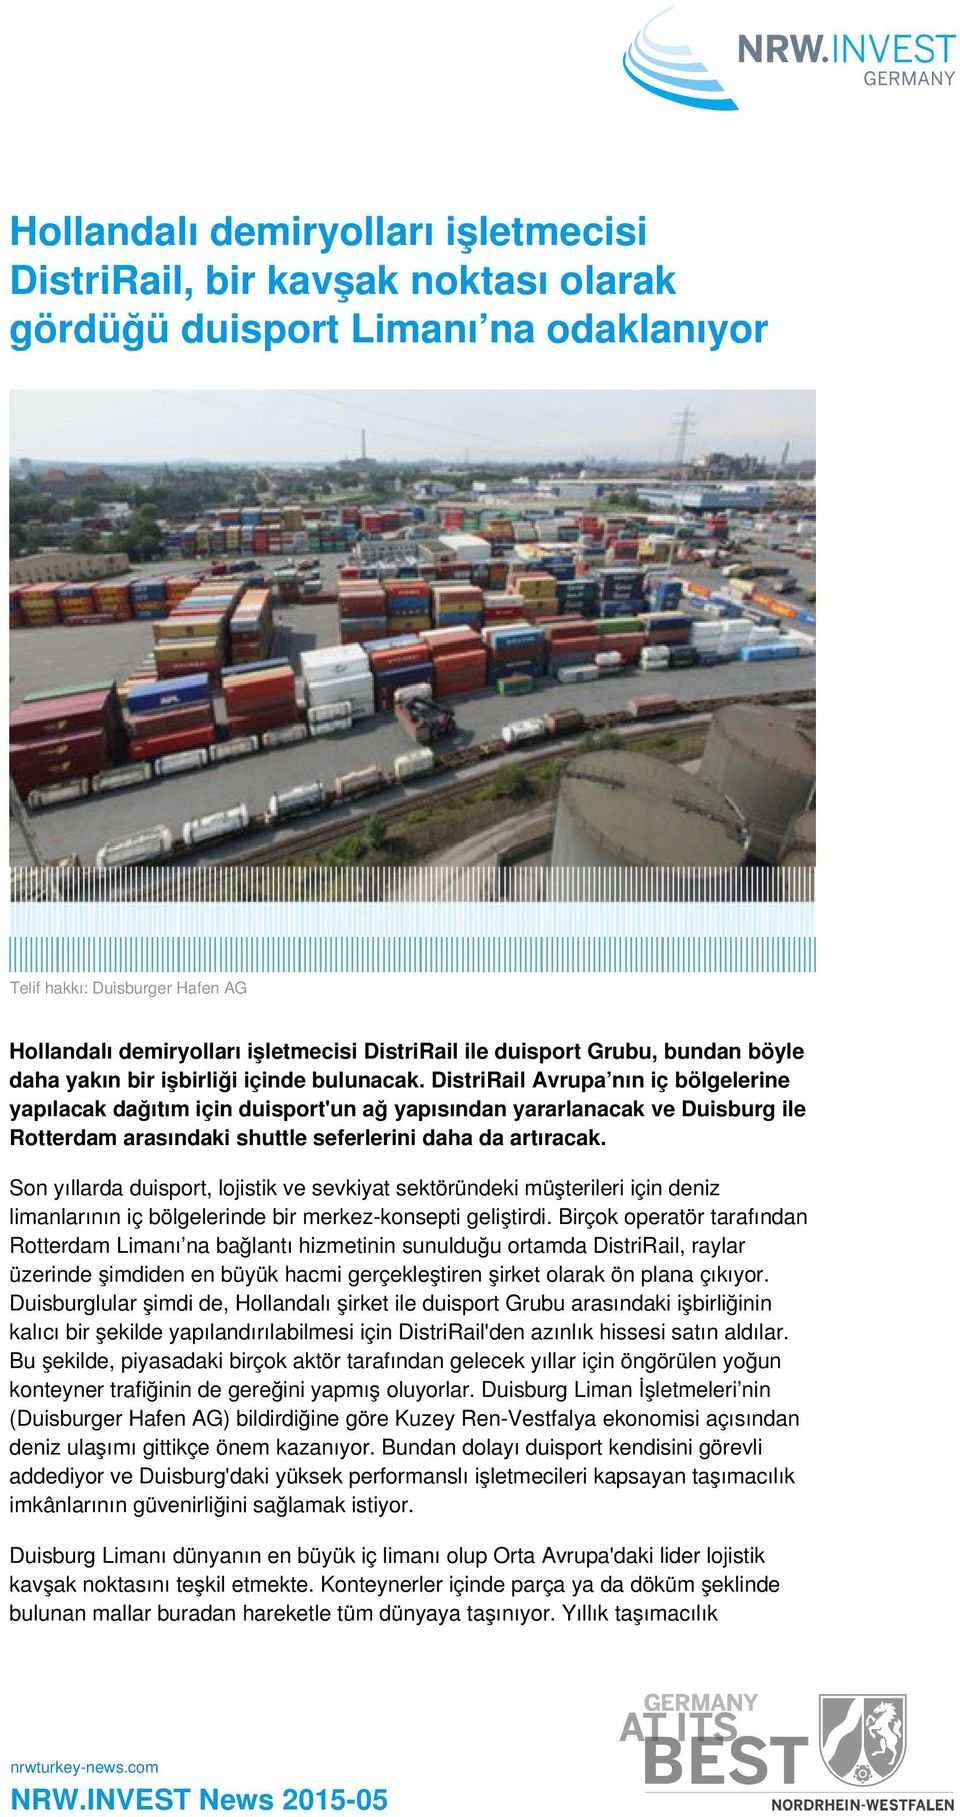 DistriRail Avrupa nın iç bölgelerine yapılacak dağıtım için duisport'un ağ yapısından yararlanacak ve Duisburg ile Rotterdam arasındaki shuttle seferlerini daha da artıracak.